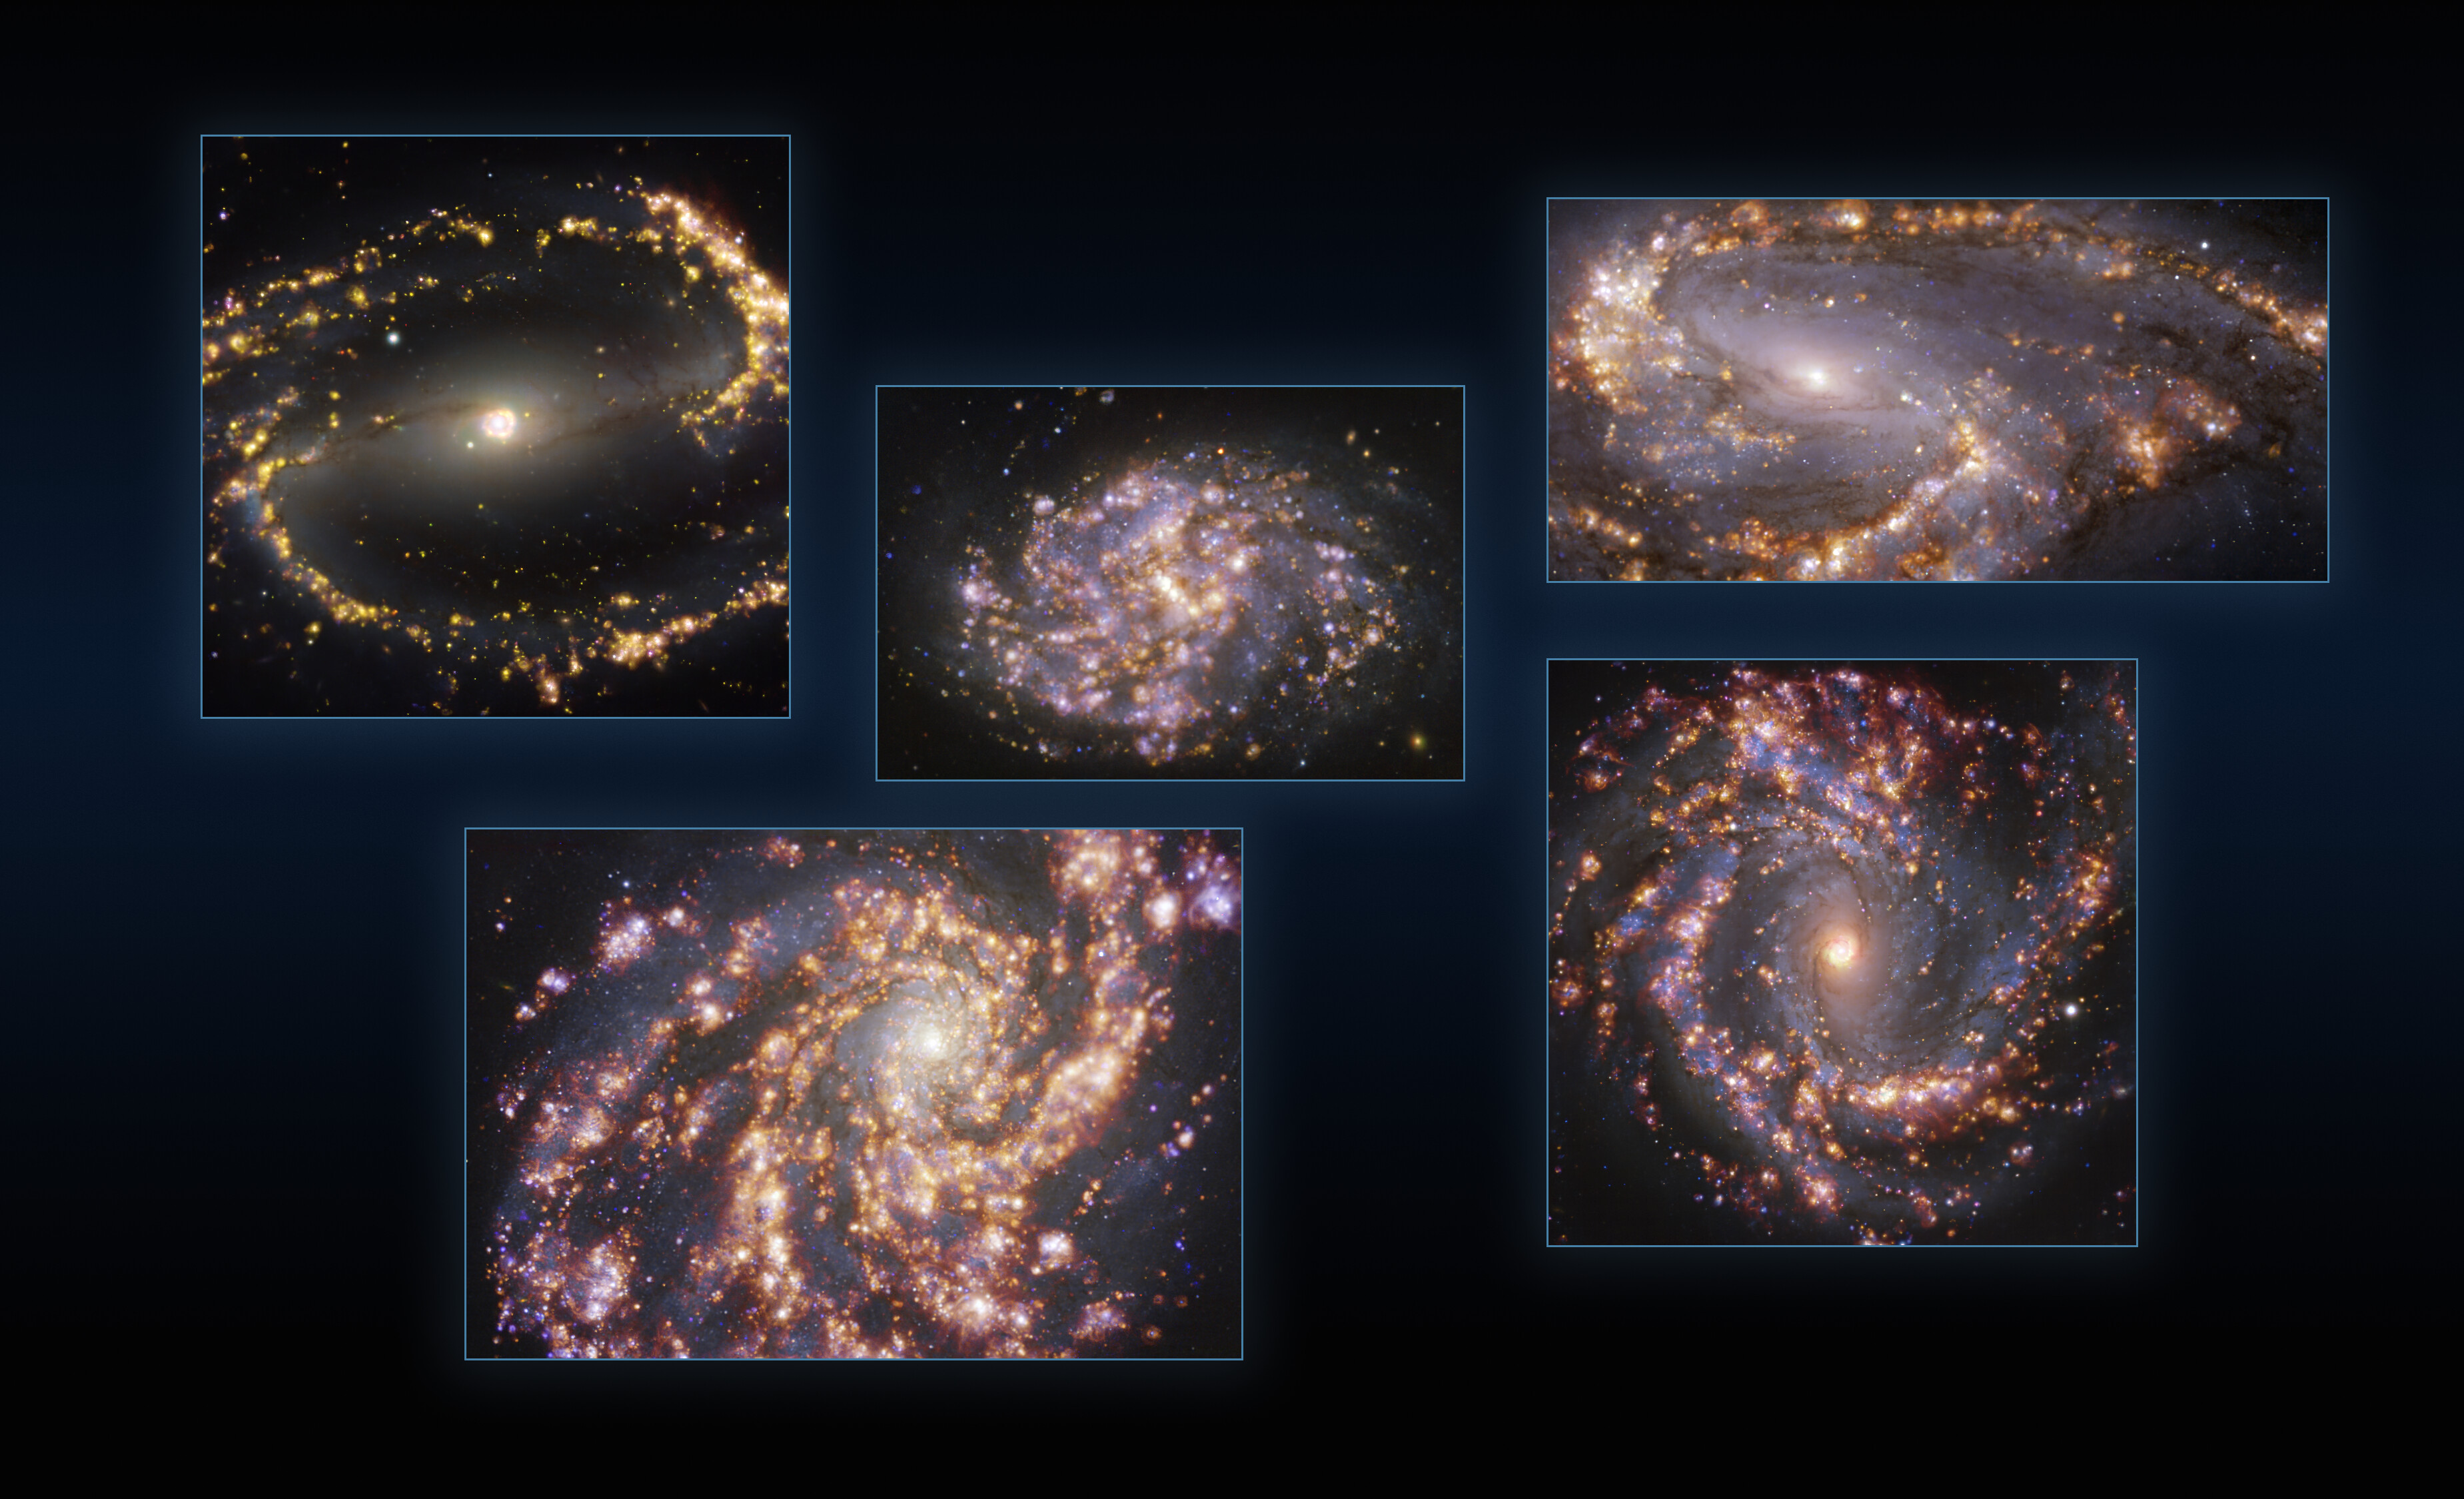 Cette image combine des observations des galaxies proches NGC 1300, NGC 1087, NGC 3627 (en haut, de gauche à droite), NGC 4254 et NGC 4303 (en bas, de gauche à droite) prises avec le Multi-Unit Spectroscopic Explorer (Muse) sur le Very Large Telescope (VLT) de l'ESO. Chaque image individuelle est une combinaison d'observations réalisées à différentes longueurs d'onde de lumière afin de cartographier les populations stellaires et le gaz chaud. Les lueurs dorées correspondent principalement à des nuages de gaz ionisés d'hydrogène, d'oxygène et de soufre, marquant la présence d'étoiles nouvellement nées, tandis que les régions bleutées en arrière-plan révèlent la distribution d'étoiles légèrement plus anciennes. Les images ont été prises dans le cadre du projet Phangs (Physics at High Angular resolution in Nearby GalaxieS), qui réalise des observations à haute résolution des galaxies proches avec des télescopes fonctionnant sur l'ensemble du spectre électromagnétique. © ESO, Phangs